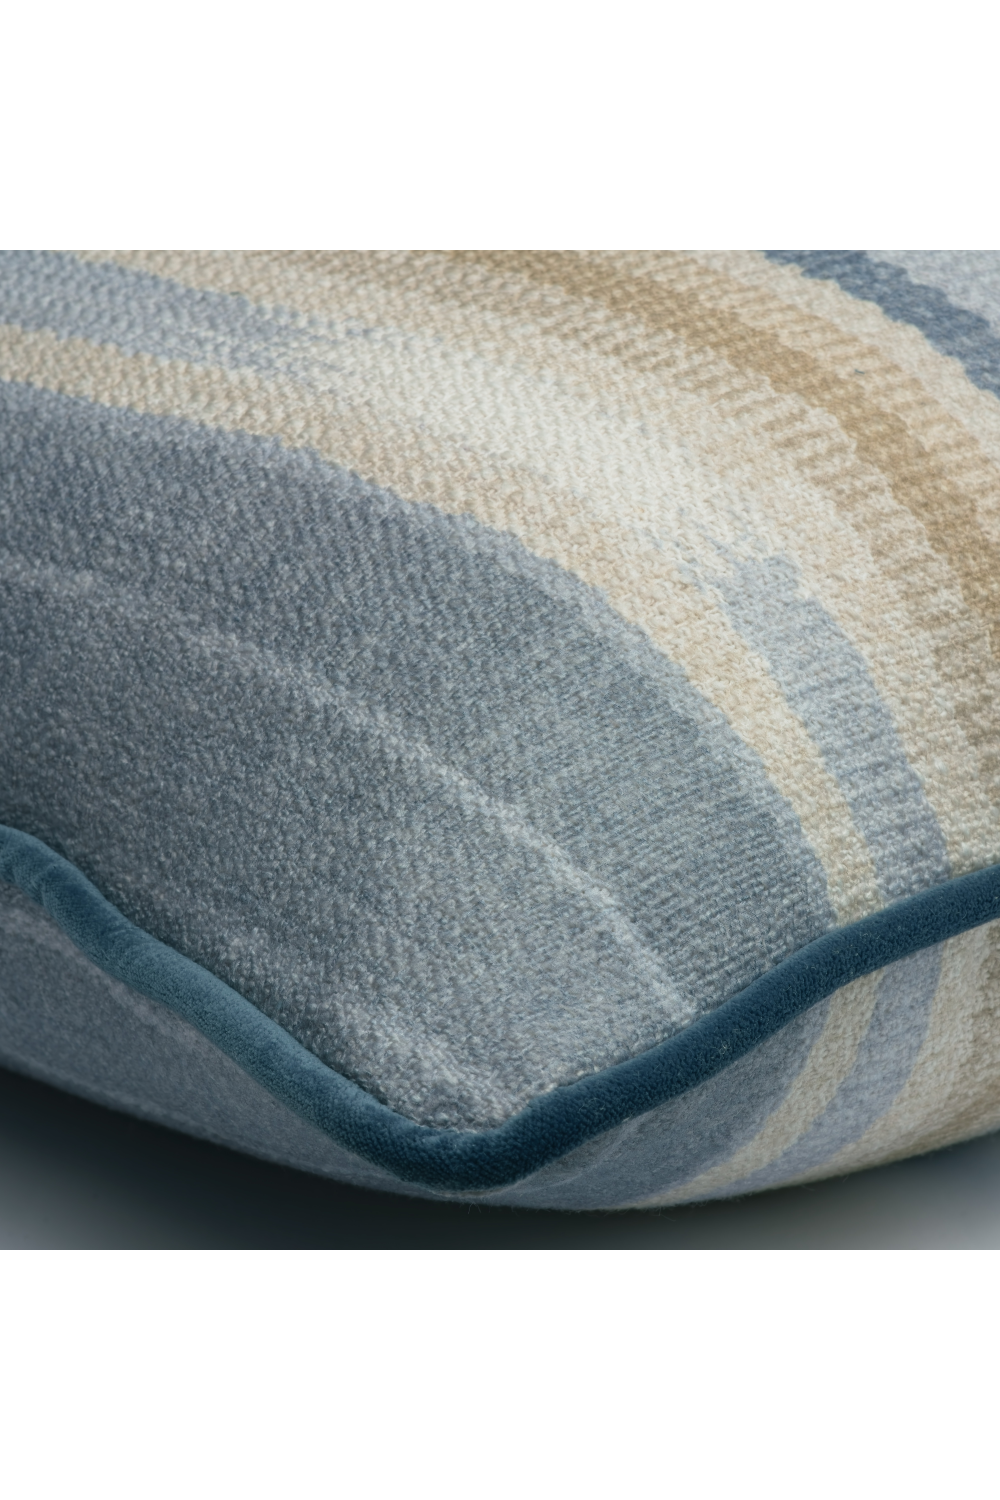 Multi-Colored Stripe Outdoor Cushion | Andrew Martin Brick | Oroa.com